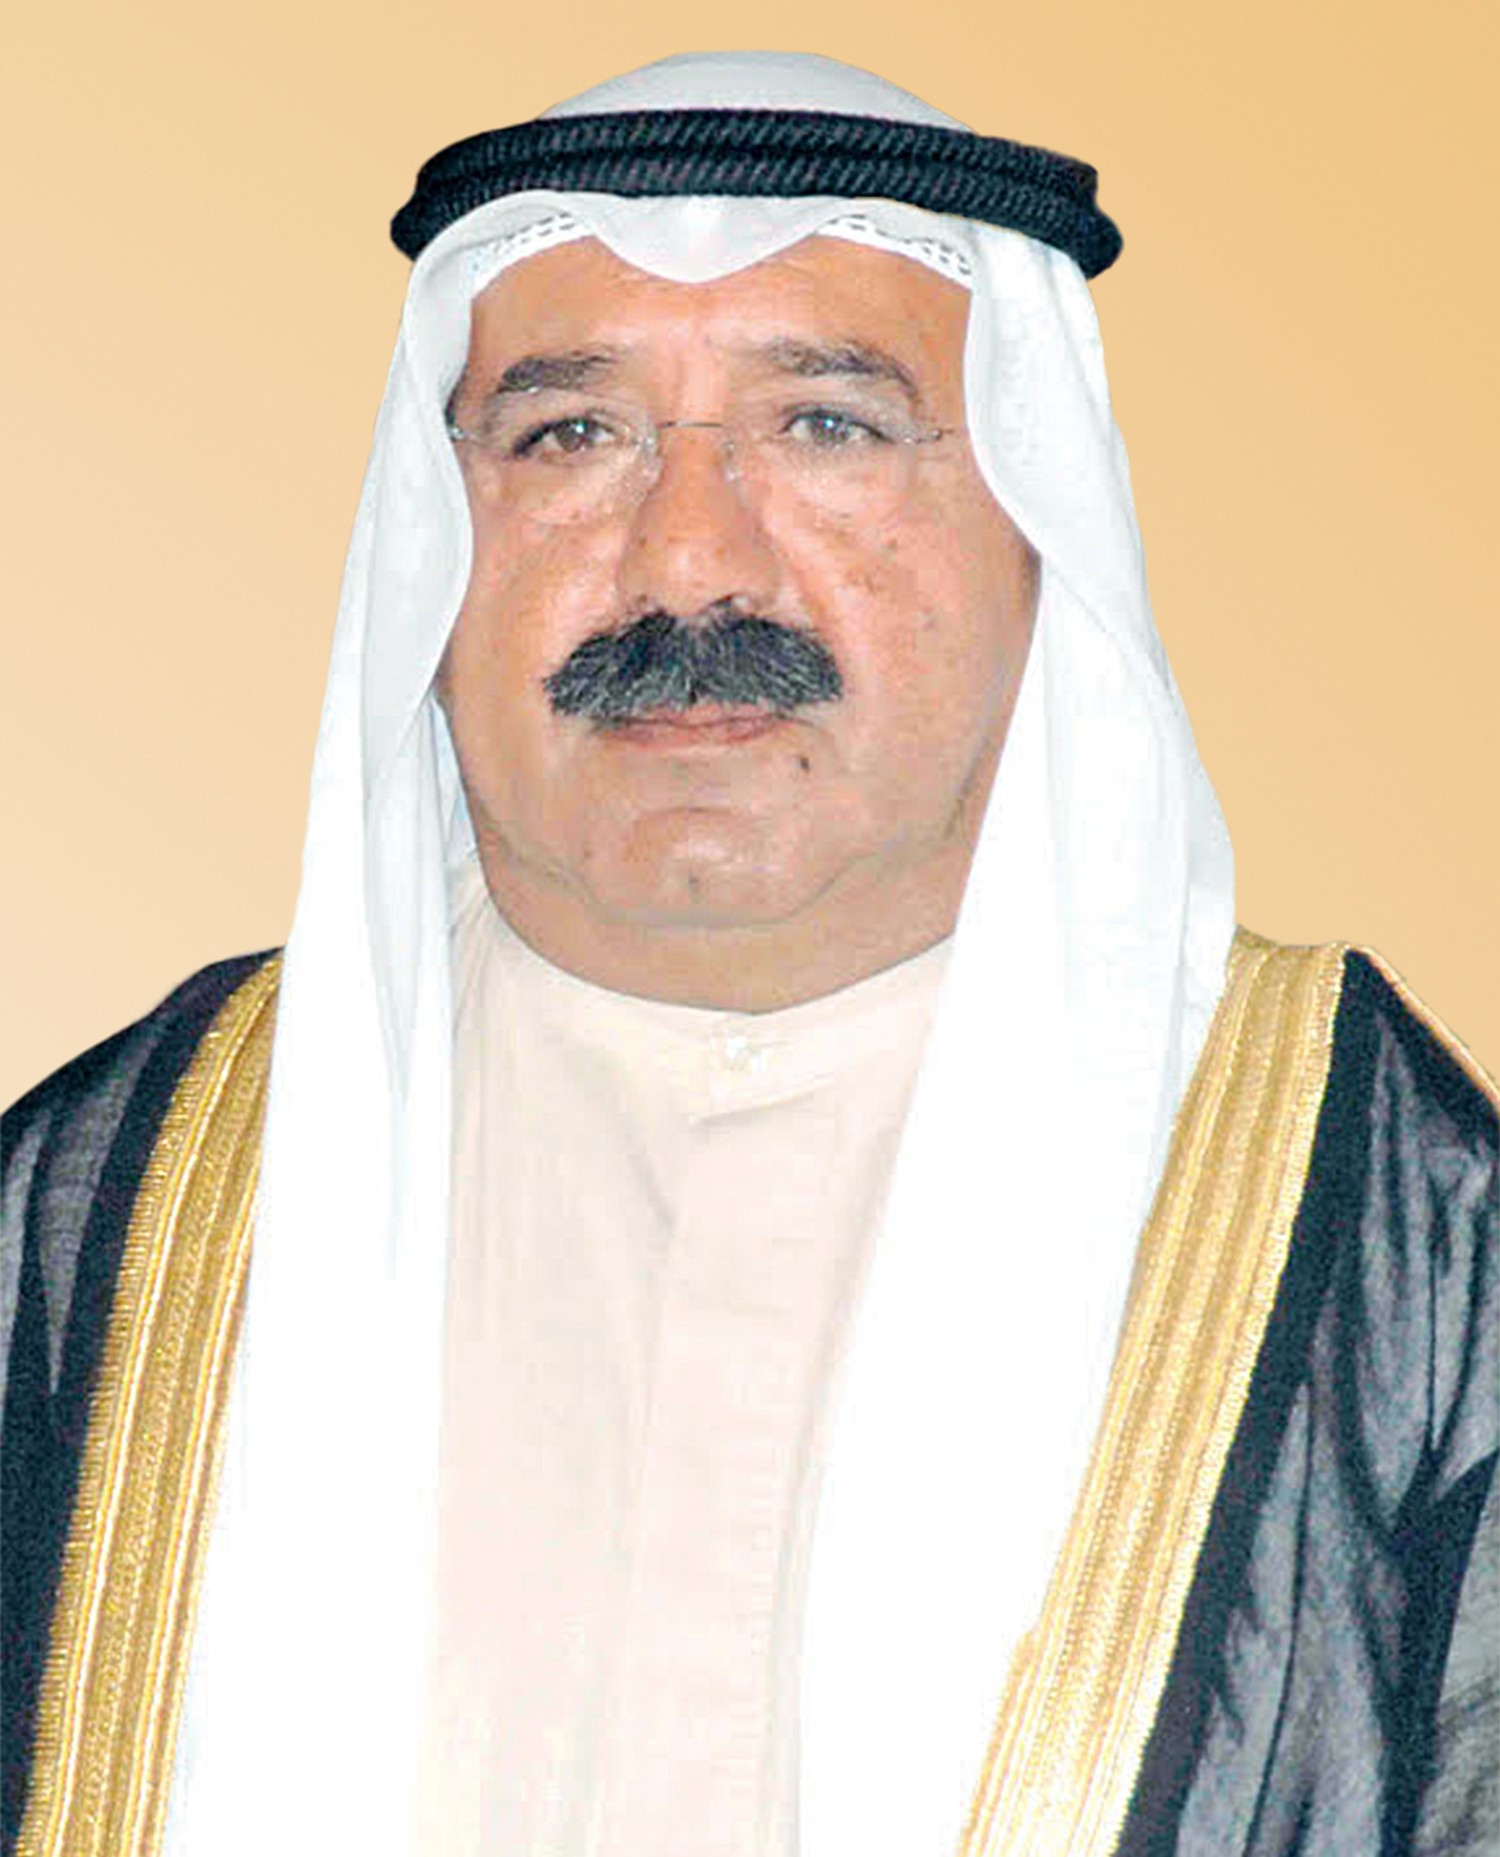 Kuwait's First Deputy Prime Minister and Defense Minister Sheikh Nasser Sabah Al-Ahmad Al-Sabah